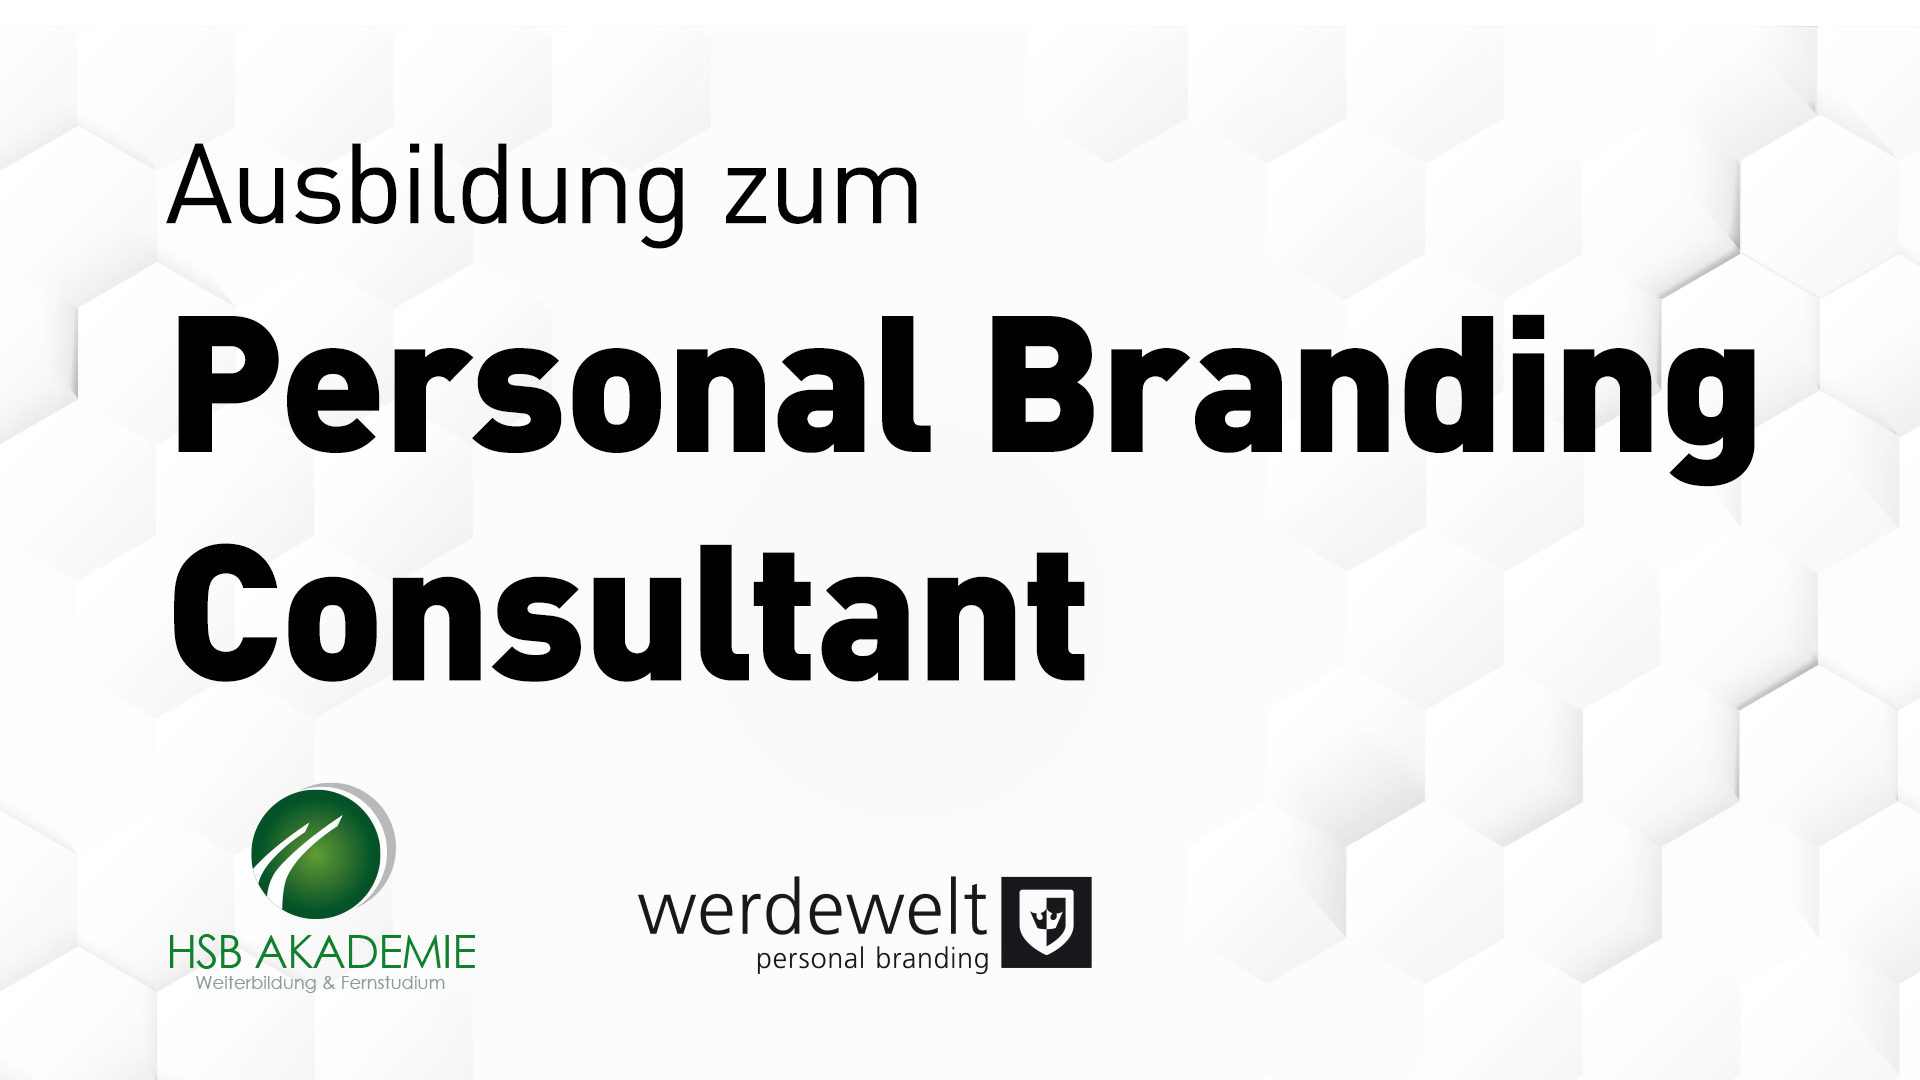 Ausbildung zum Personal Branding Consultant – erstmalig im deutschsprachigen Raum